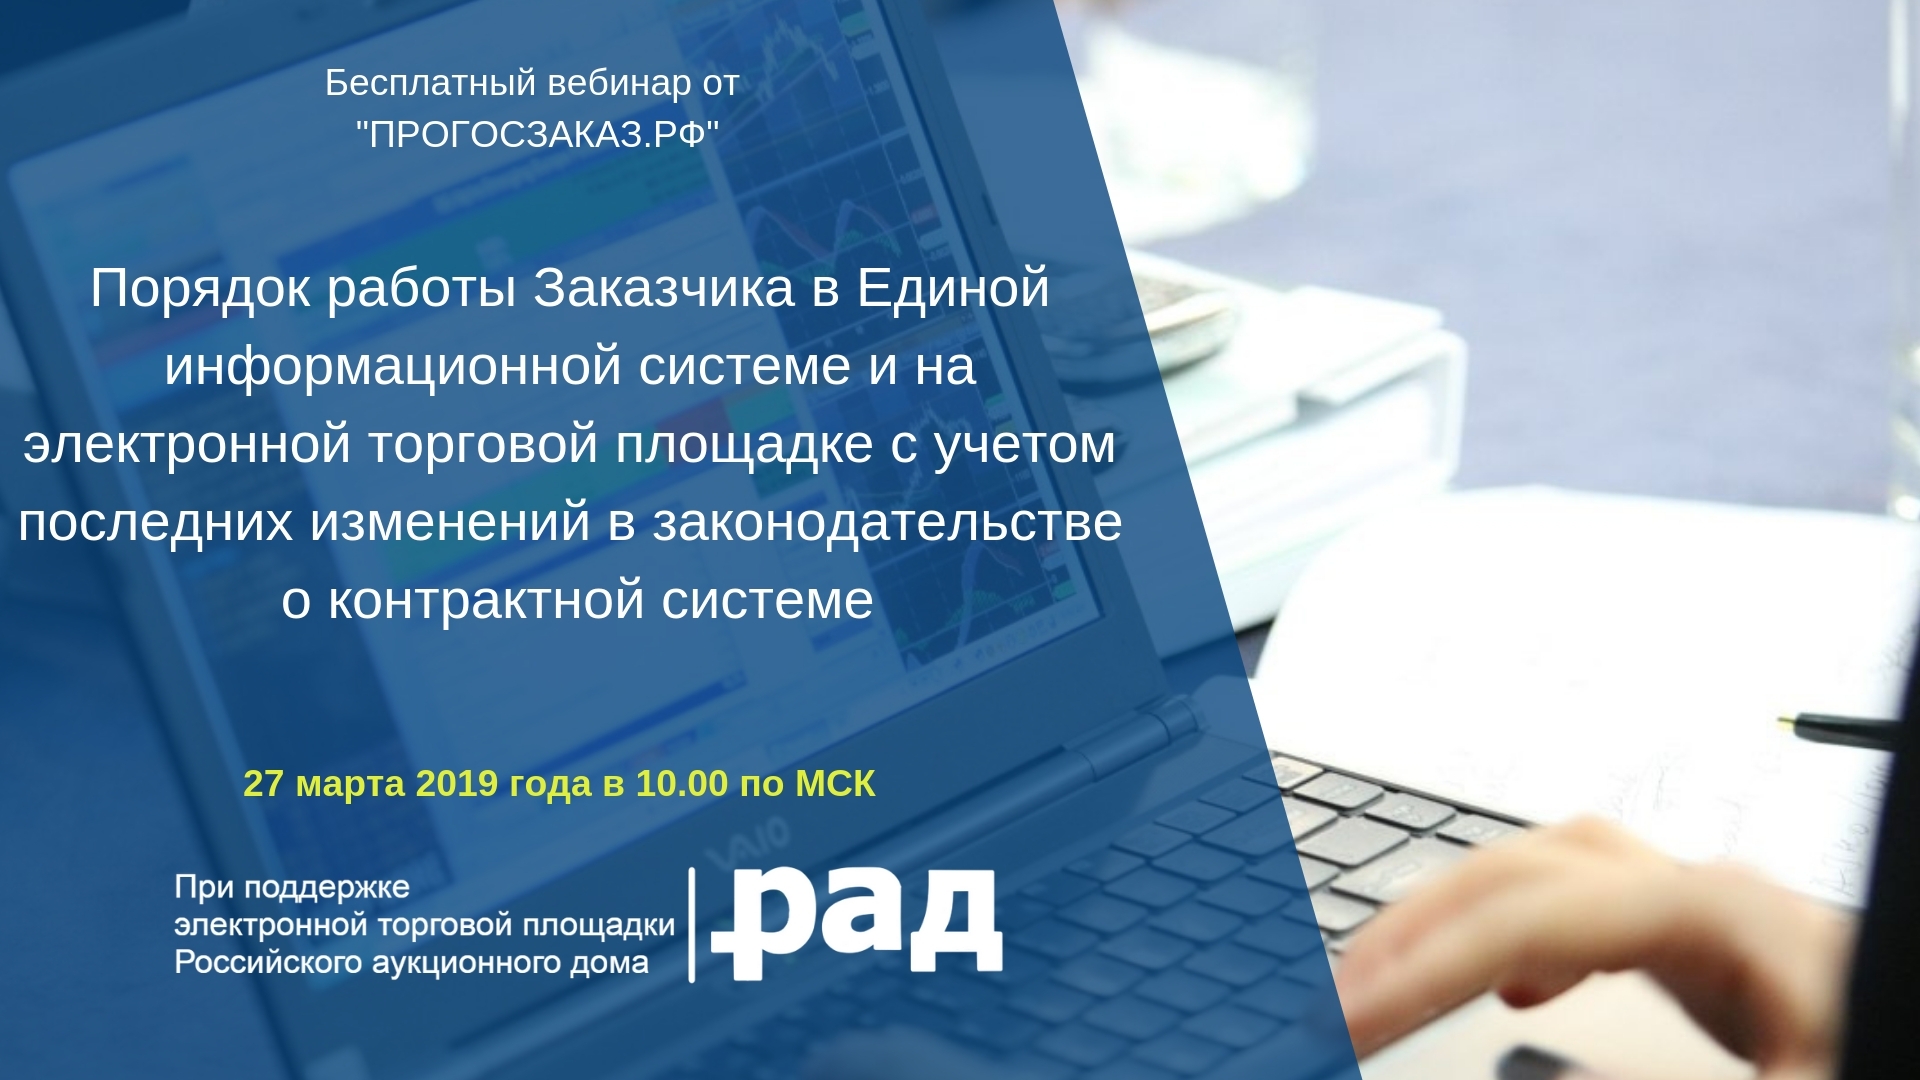 27 марта 2019 года в 10:00 по МСК состоится бесплатный вебинар на тему «Порядок работы Заказчика в ЕИС и на ЭТП с учетом последних изменений в законодательстве о контрактной системе»